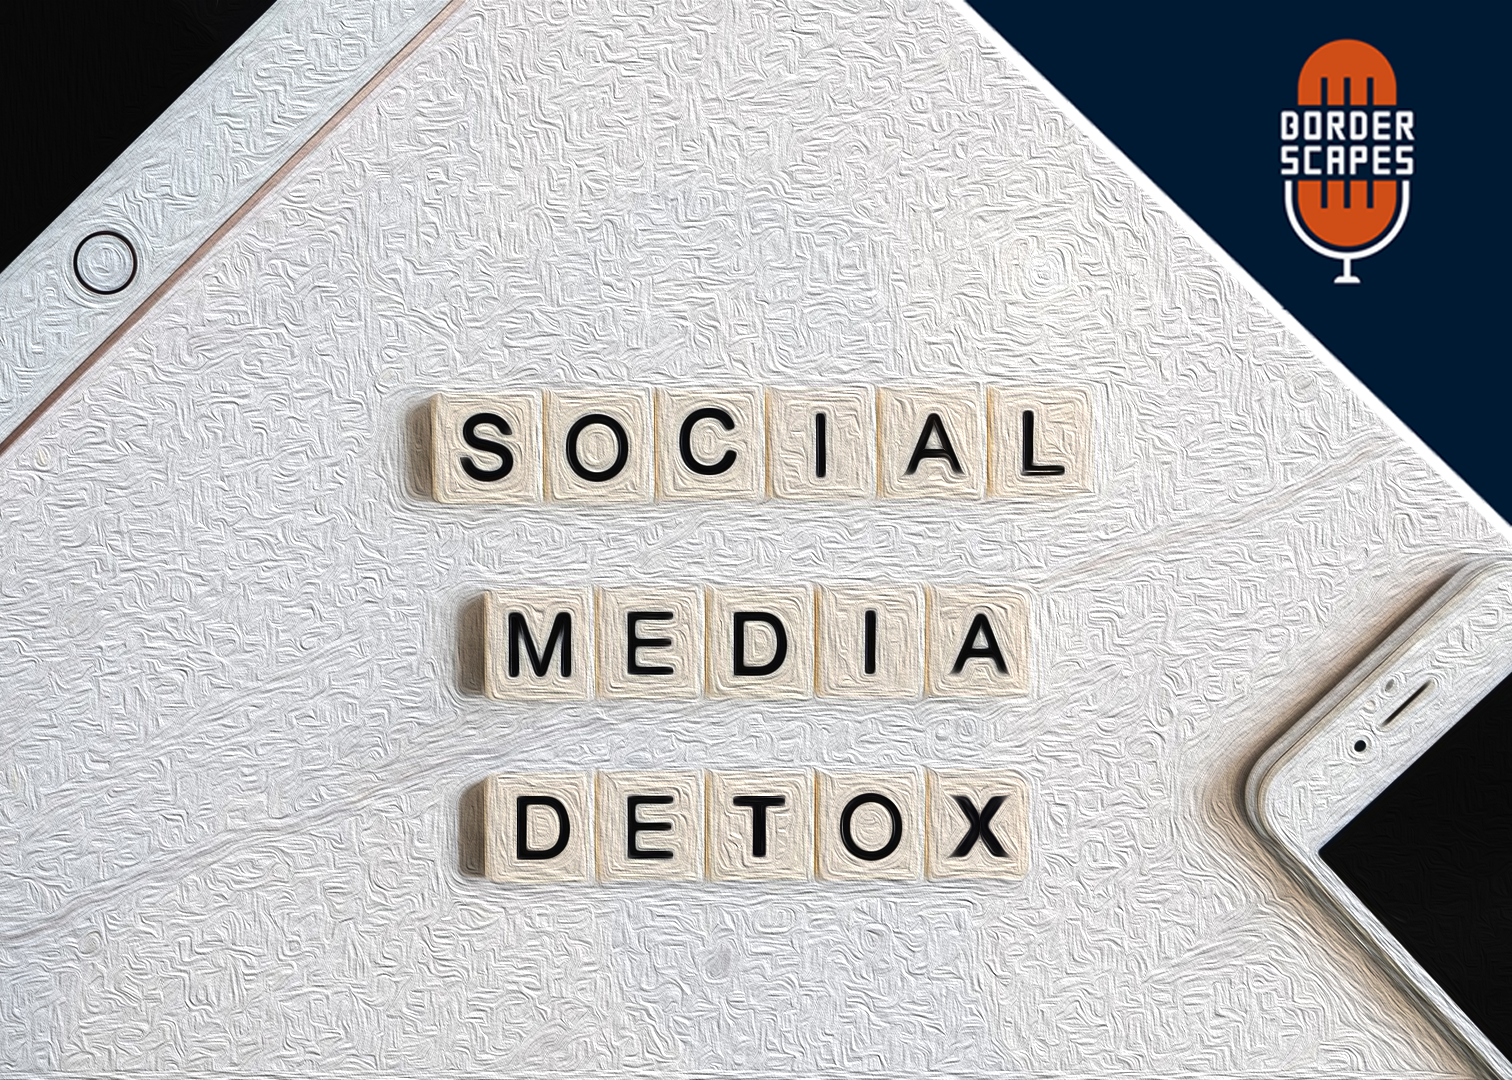 Social Media Detox – Borders of Myself